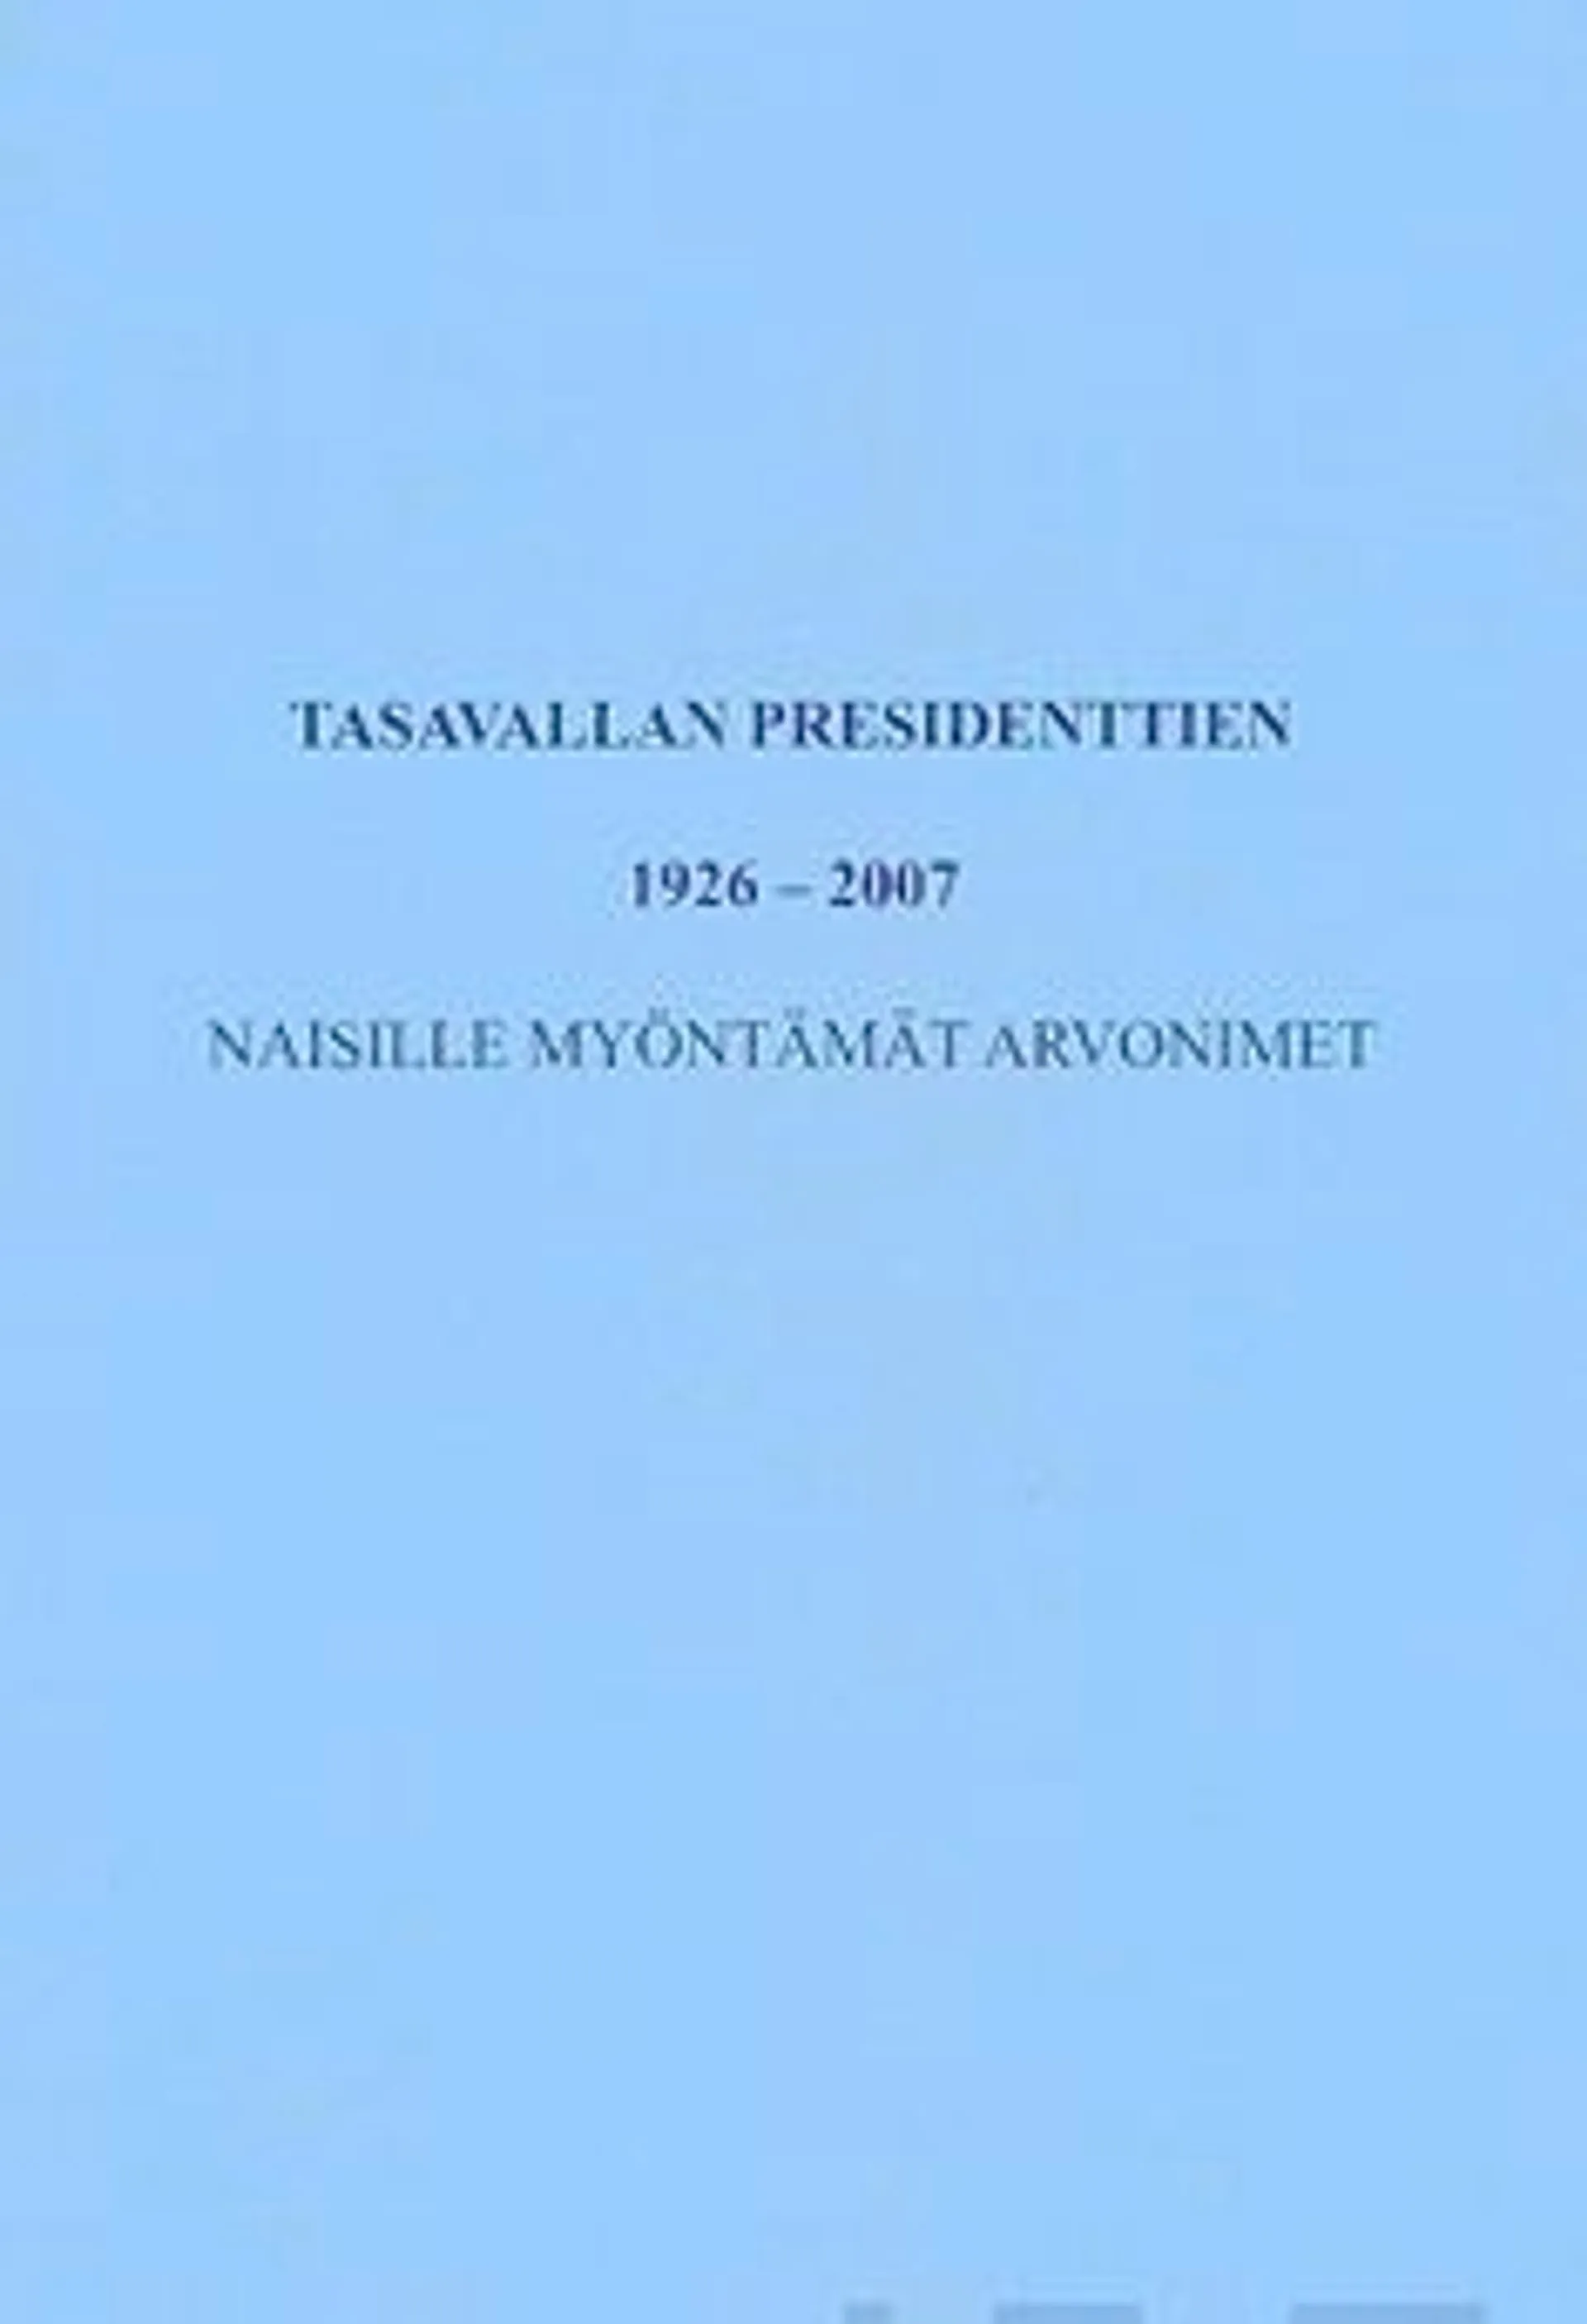 Tasavallan presidenttien 1926-2007 naisille myöntämät arvonimet